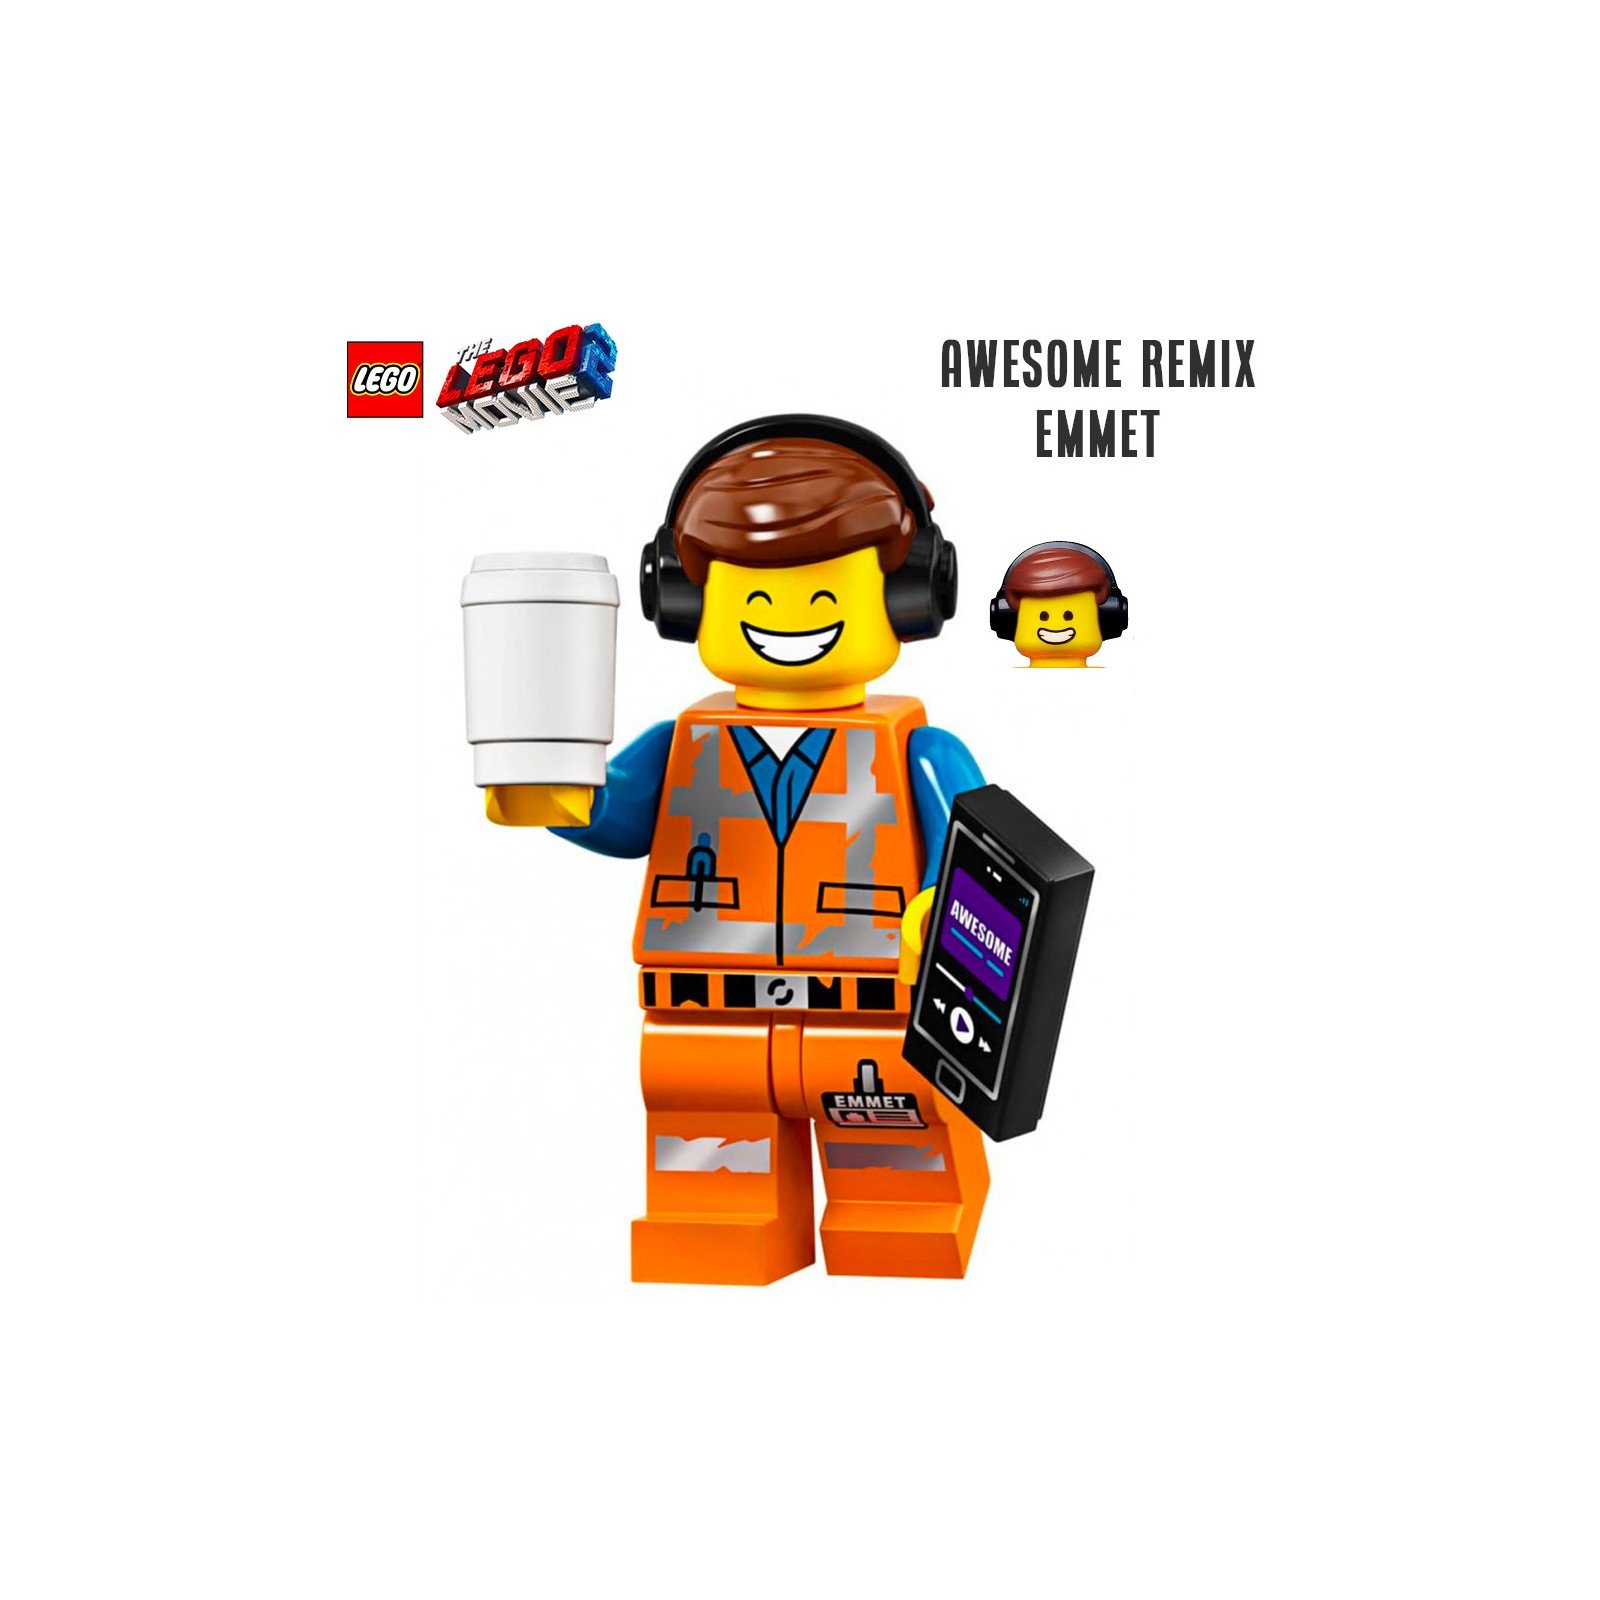 Minifigure LEGO® The LEGO Movie 2 - Awesome remix Emmet